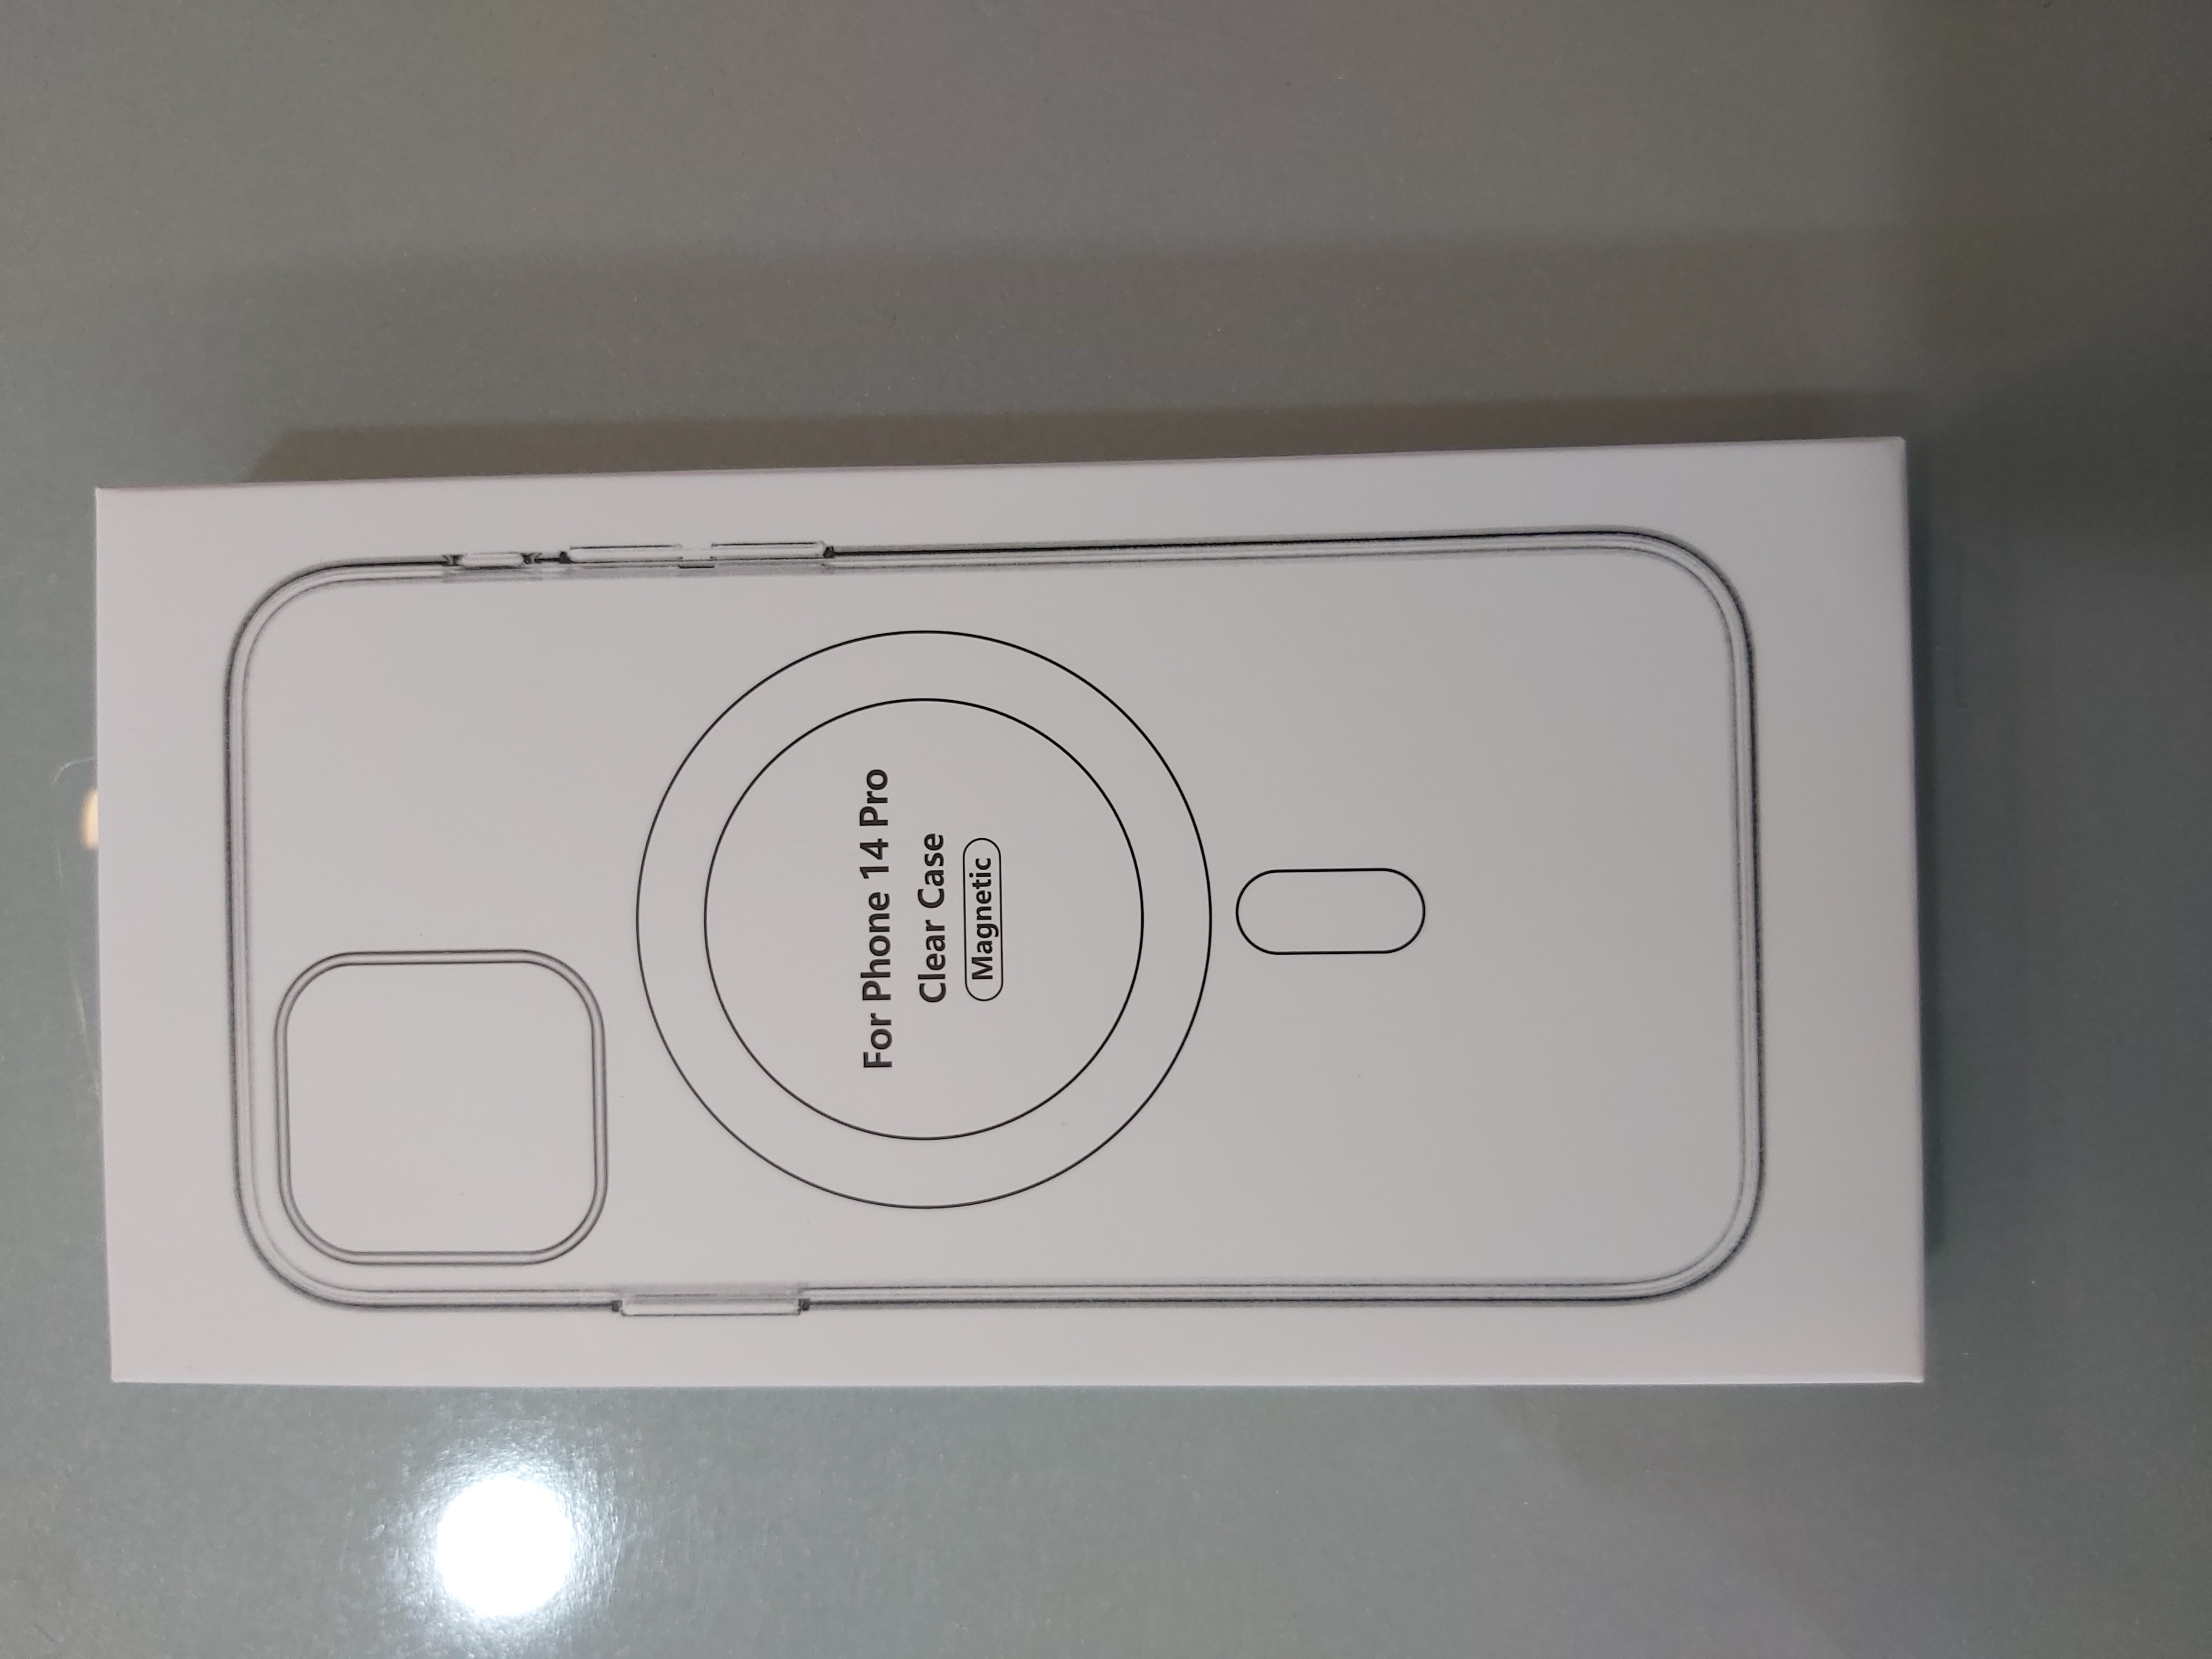 قاب مدل مگ سیف مناسب شفاف برای گوشی موبایل iphone 14 pro